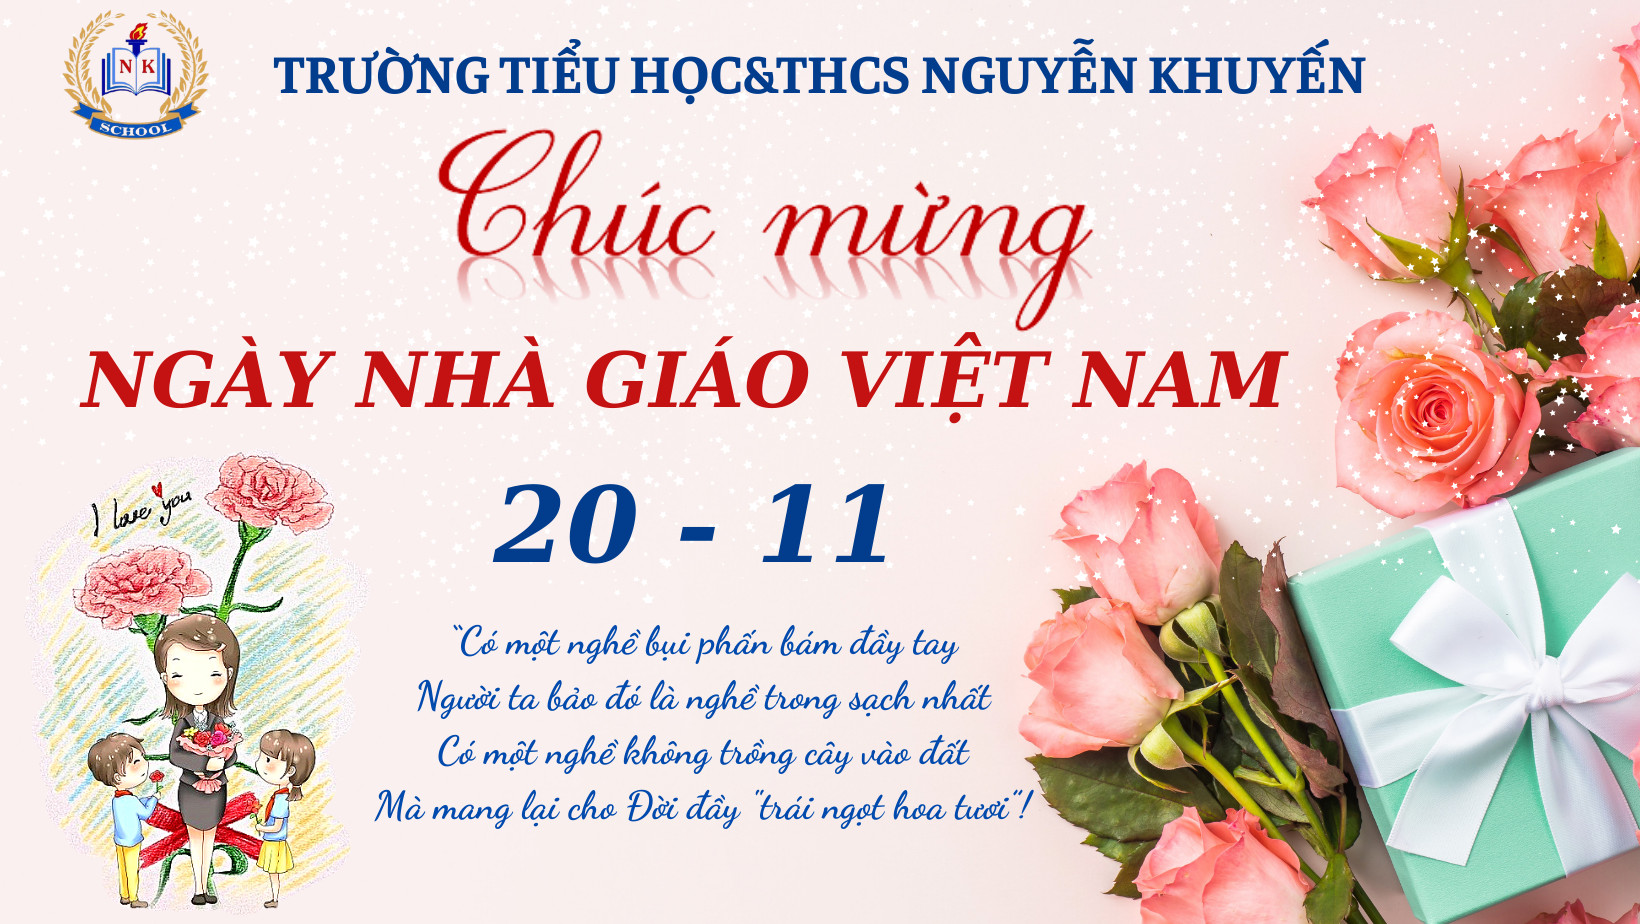 Chương trình phát thanh - Số đặc biệt nhân chào mừng Ngày Nhà giáo Việt Nam 20/11 với chủ đề “ TRI ÂN THẦY CÔ”